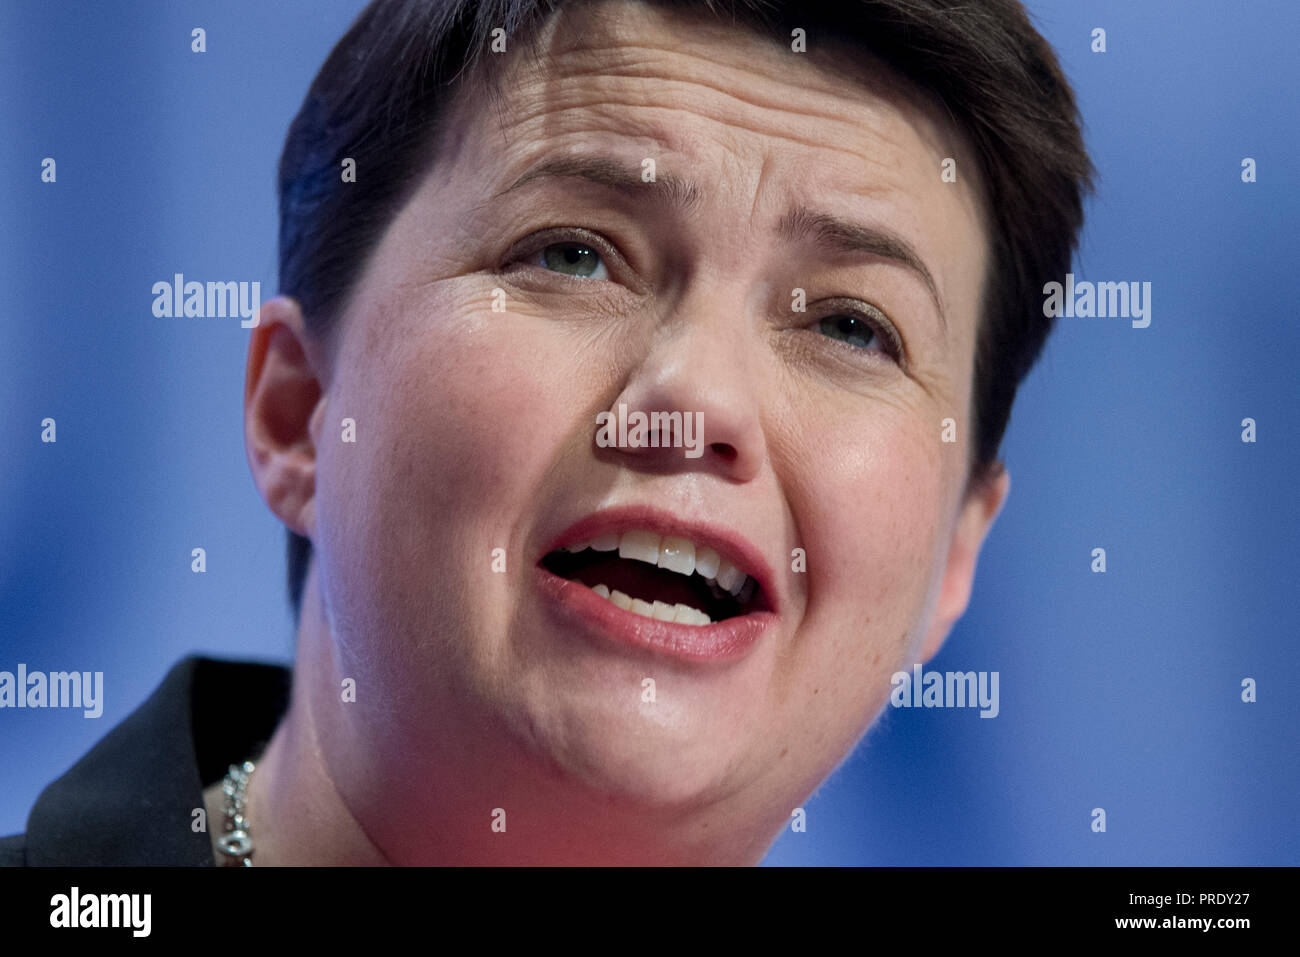 Birmingham, UK. 1er octobre 2018. Ruth Davidson, chef du parti conservateur écossais, prend la parole à la conférence du parti conservateur à Birmingham. © Russell Hart/Alamy Live News. Banque D'Images